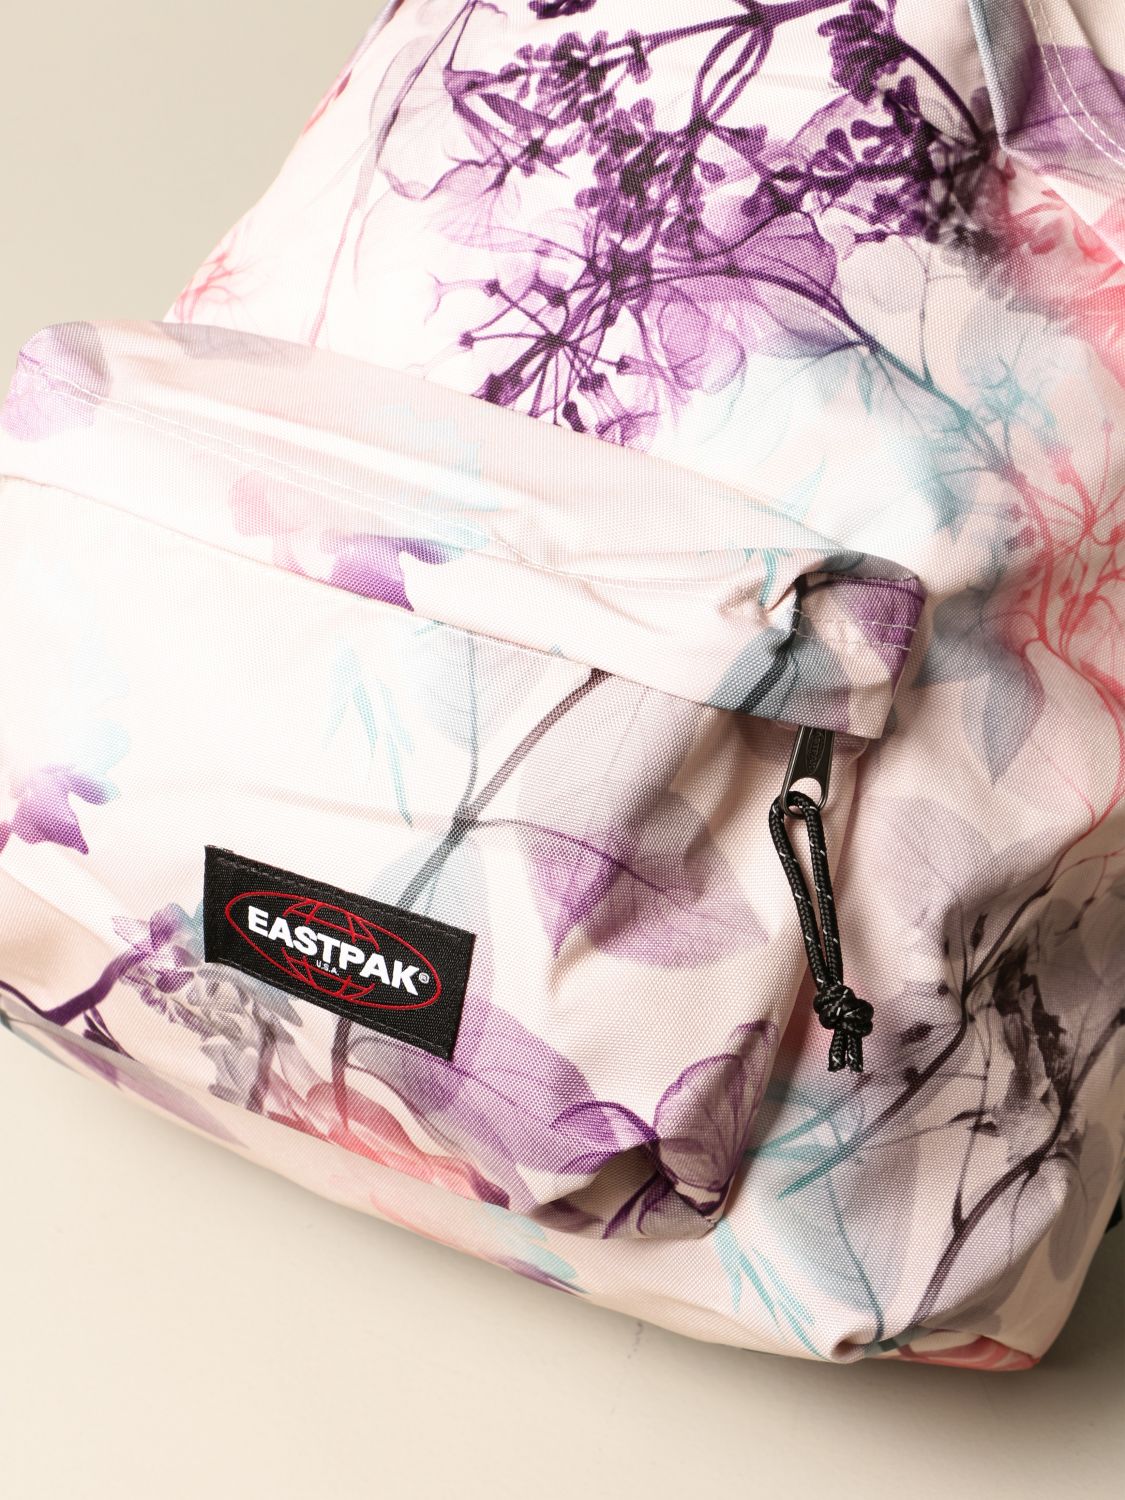 Bezem mot antiek EASTPAK: bags for man - Pink | Eastpak bags EK620B56 online on GIGLIO.COM